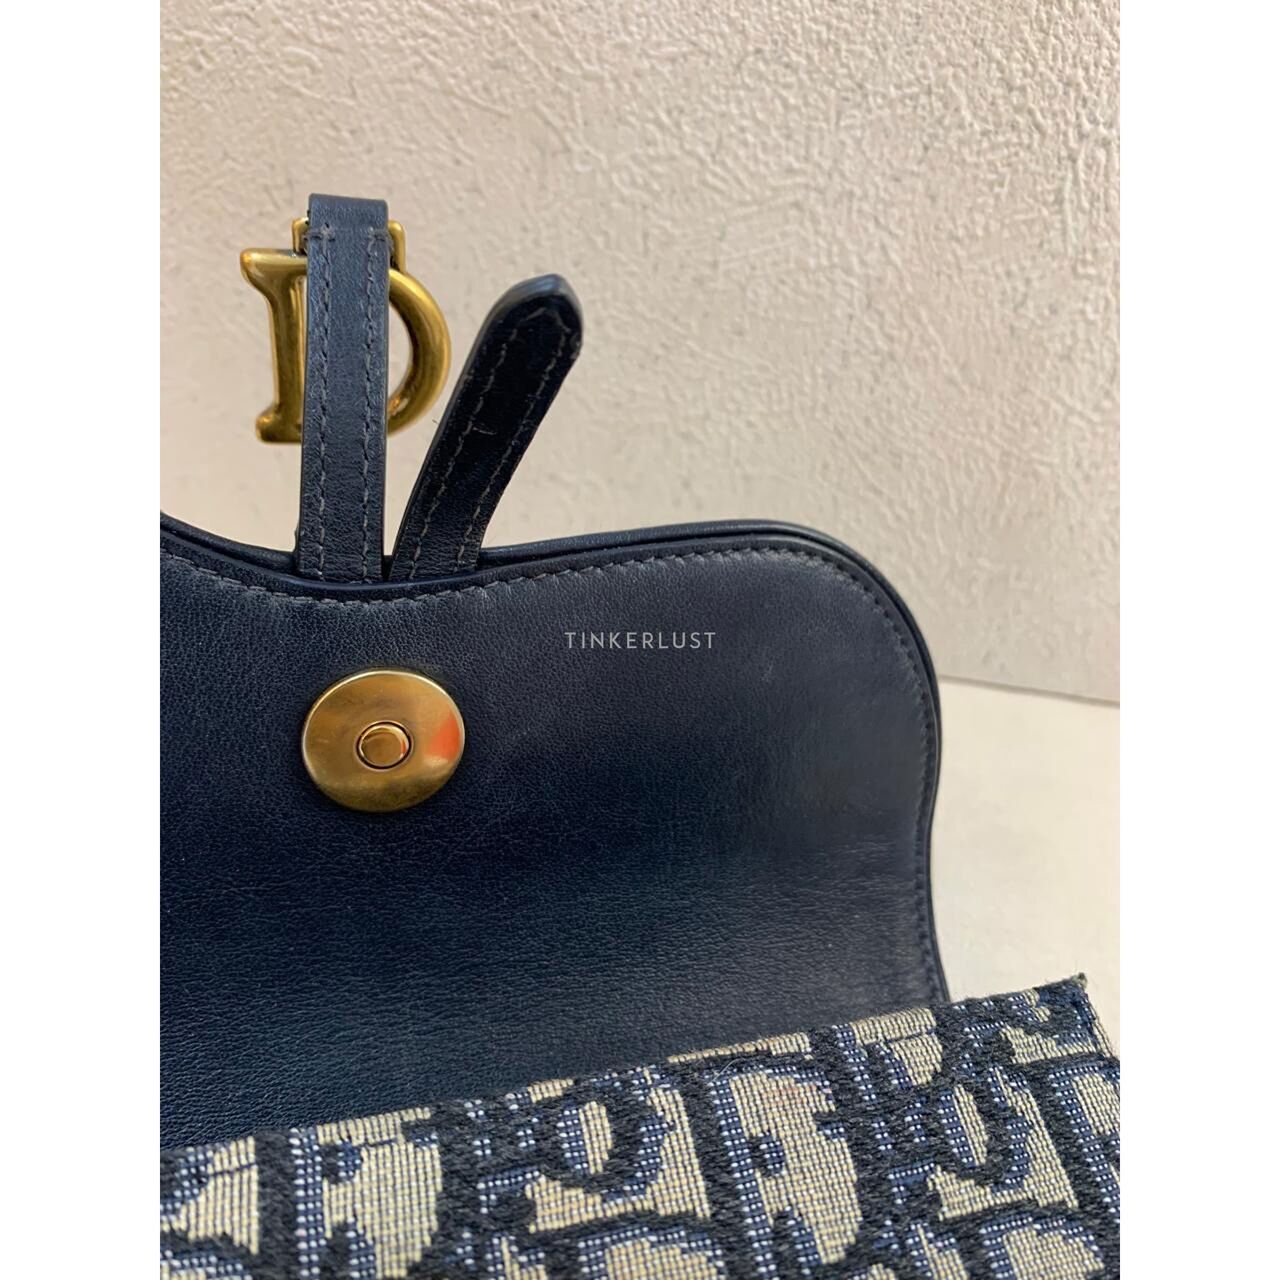 Christian Dior Saddle Belt Pouch Bag in Navy Oblique GHW 2020 Sling Bag 